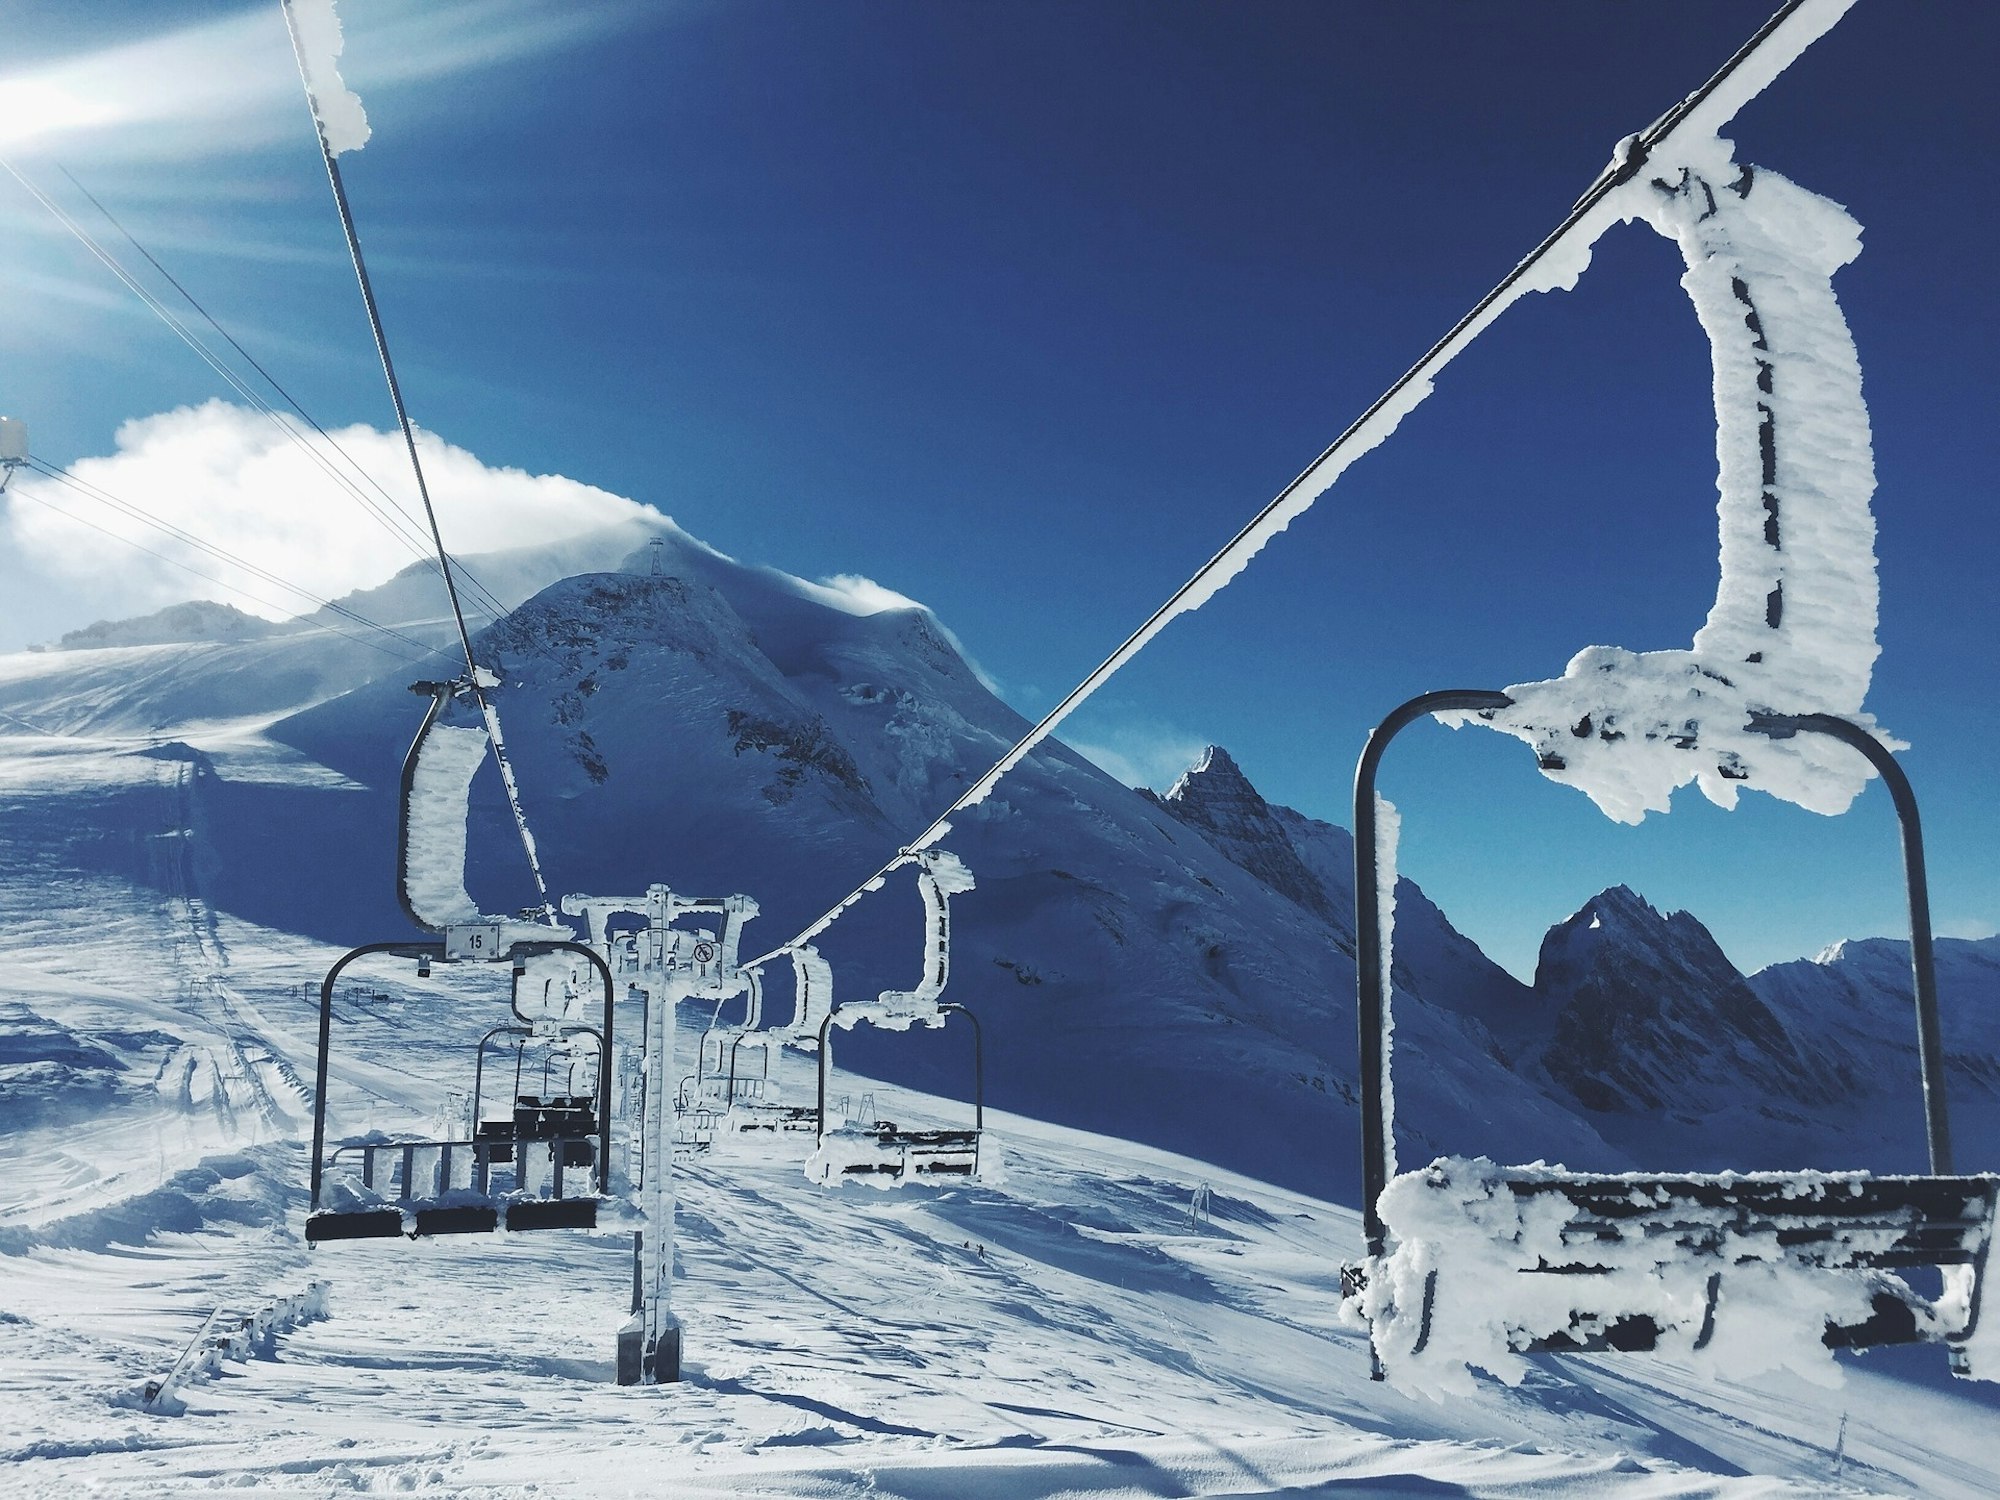 Ski homes for under £1million